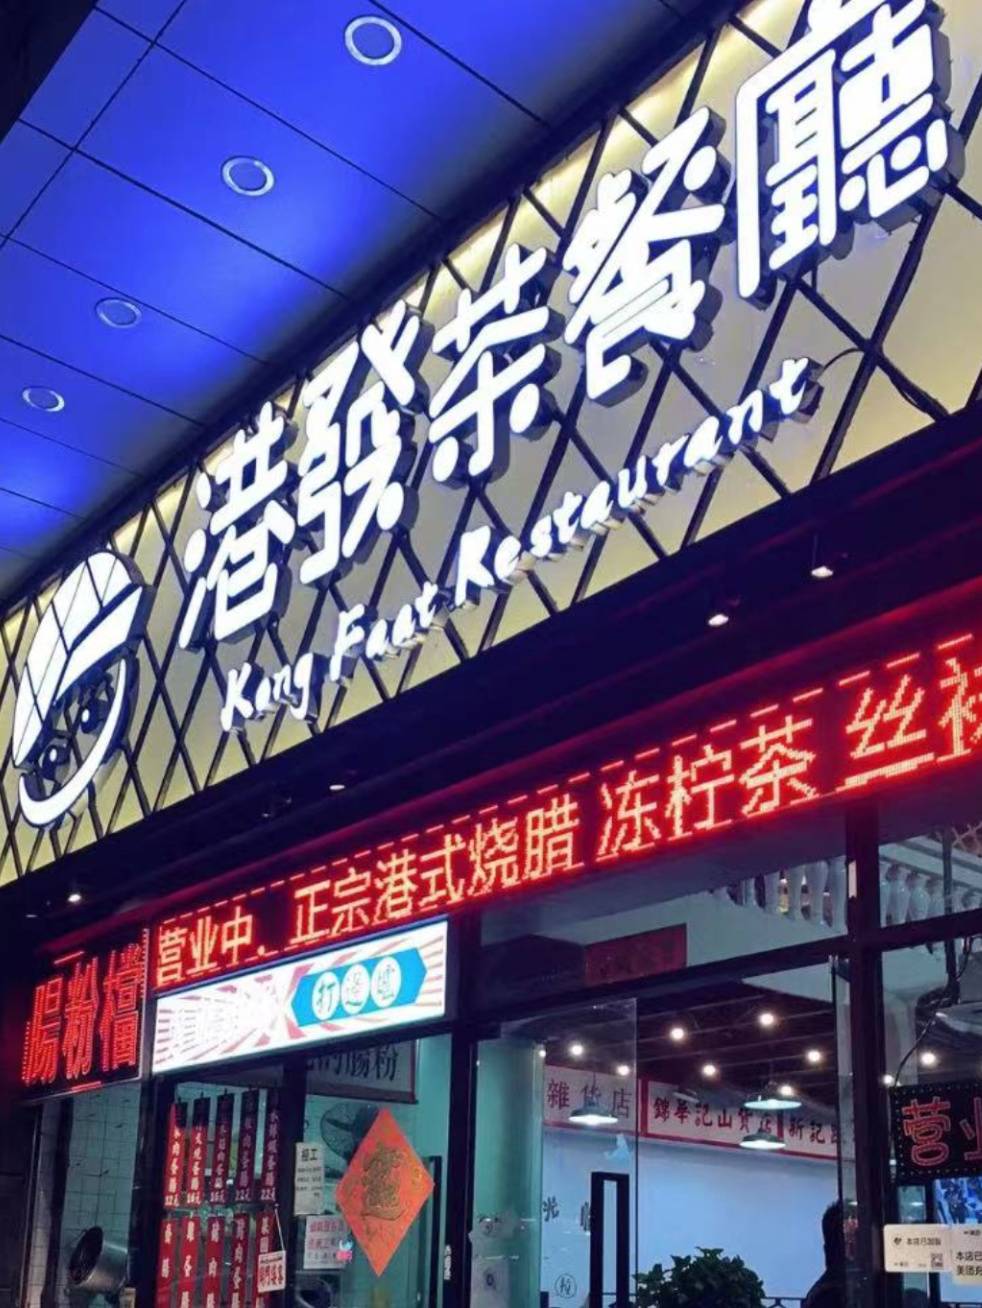 港式茶餐厅【三店通用】财神爷·港发茶餐厅 49.9元抢价值108元双人下午茶套餐